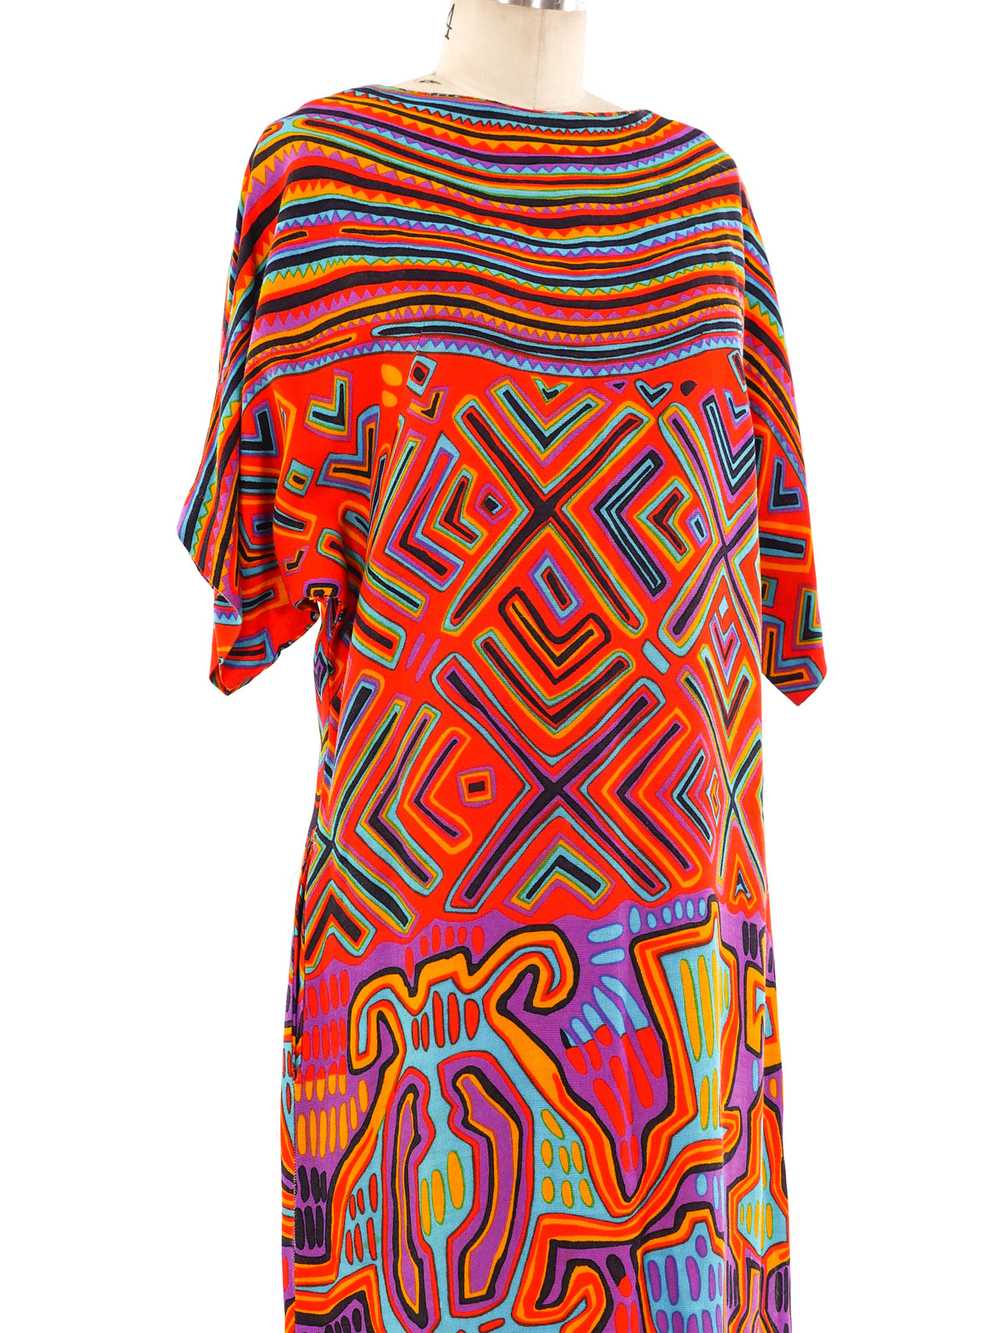 Mixed Print Rayon Dress - image 5